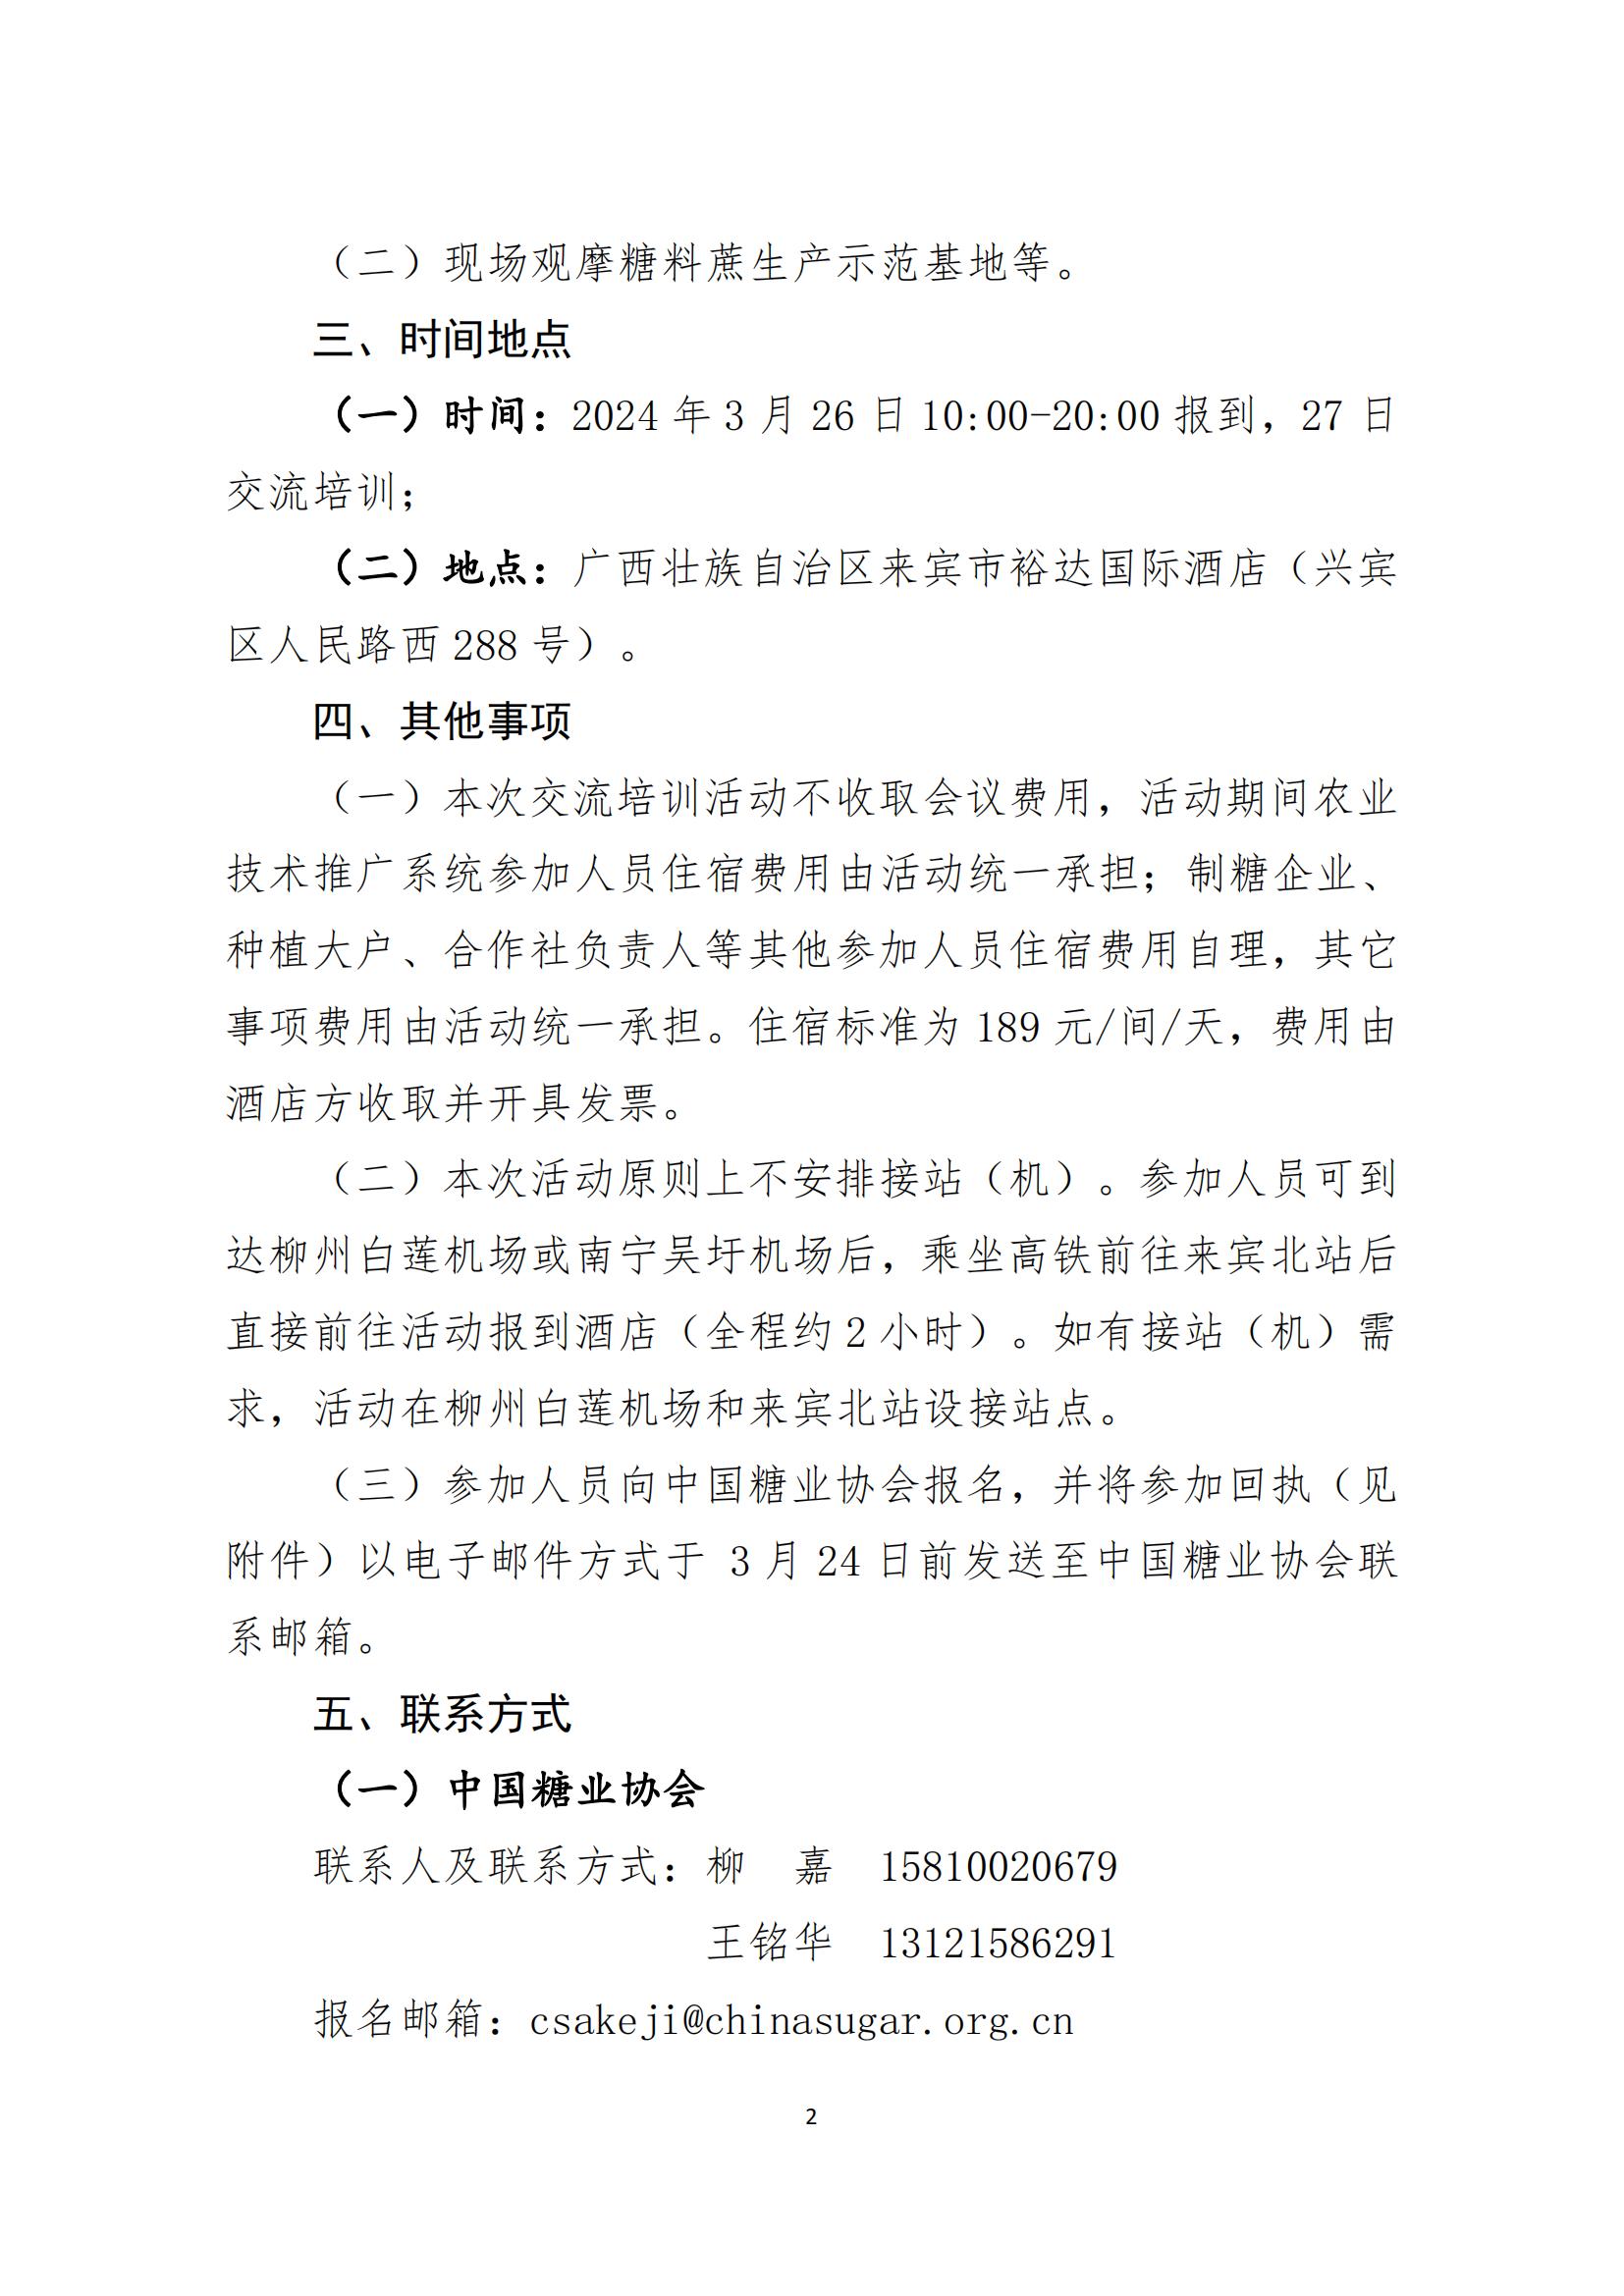 新萄京81707官方网站关于组织开展糖料种植技术培训活动的通知（终版）(3)(1)(2)_00.jpg